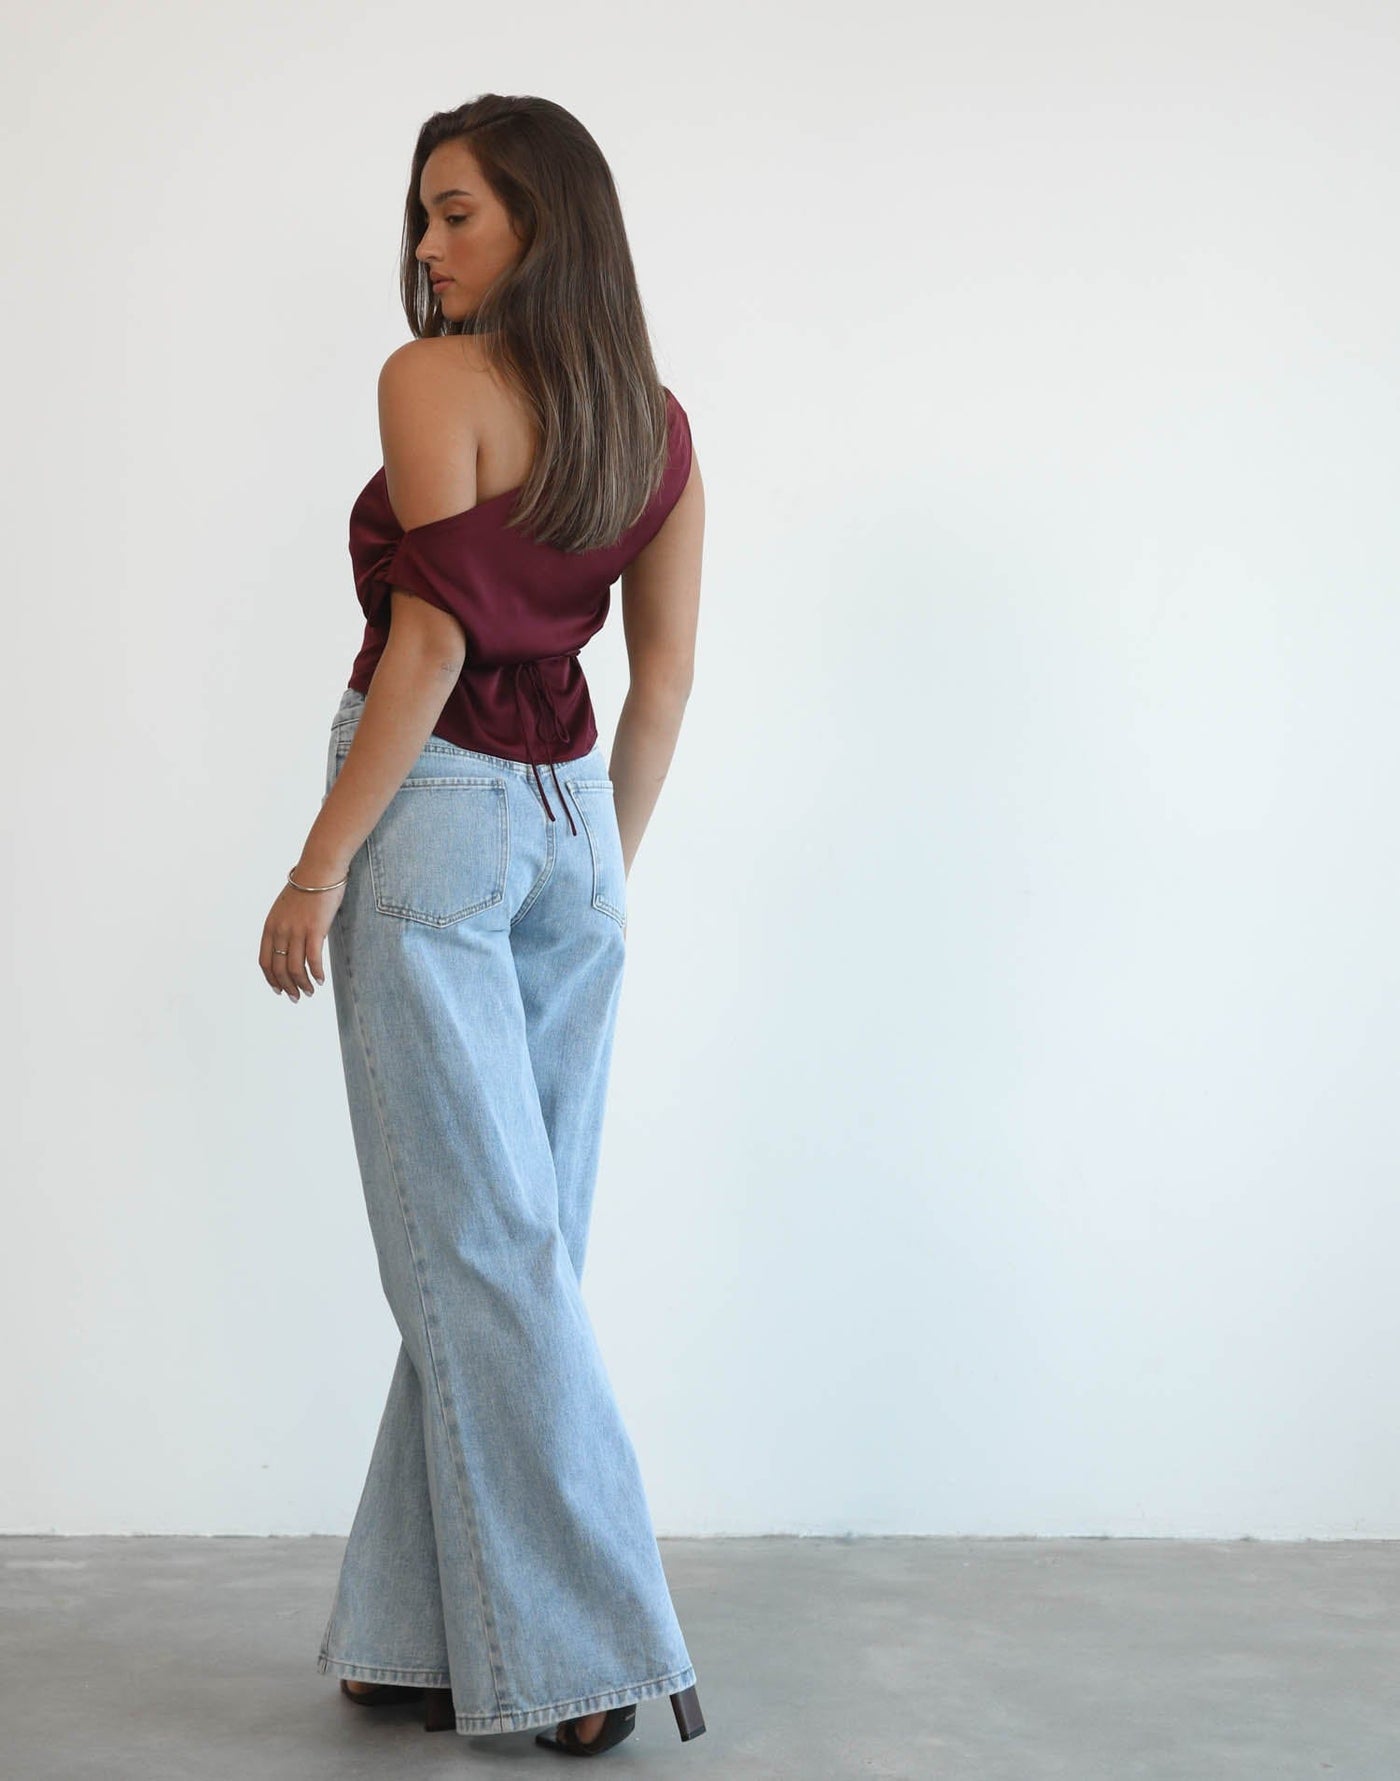 Viviana Top (Plum) - Plum Silky One Shoulder Crop Top - Women's Top - Charcoal Clothing